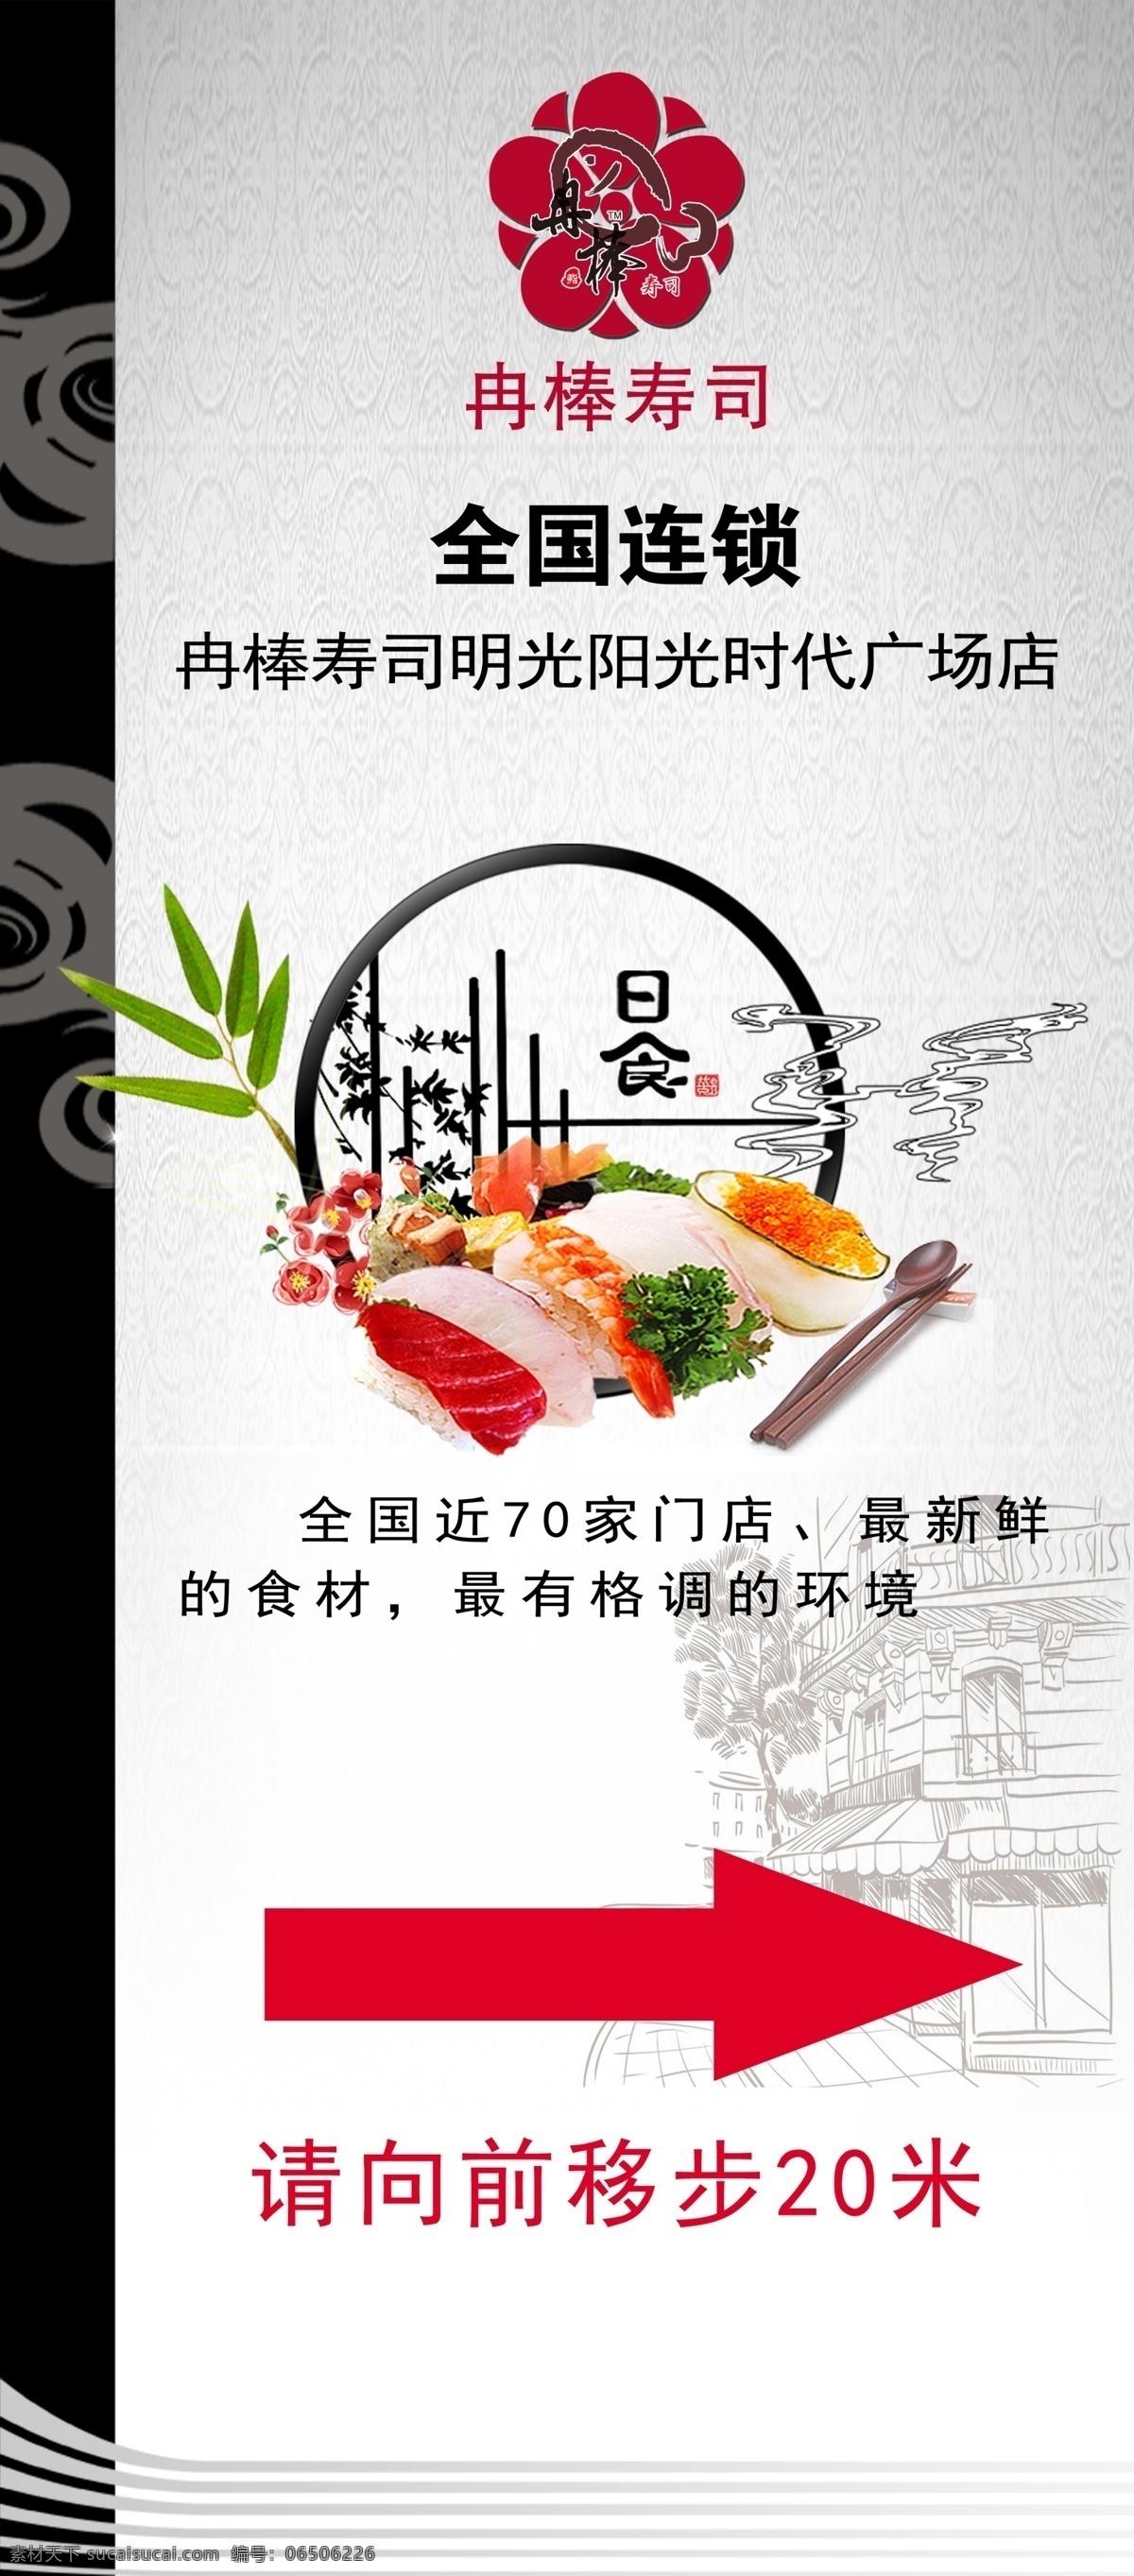 寿司 指引 展架 海报 向前 好吃的寿司 寿司图片 日式寿司 韩式寿司 美食